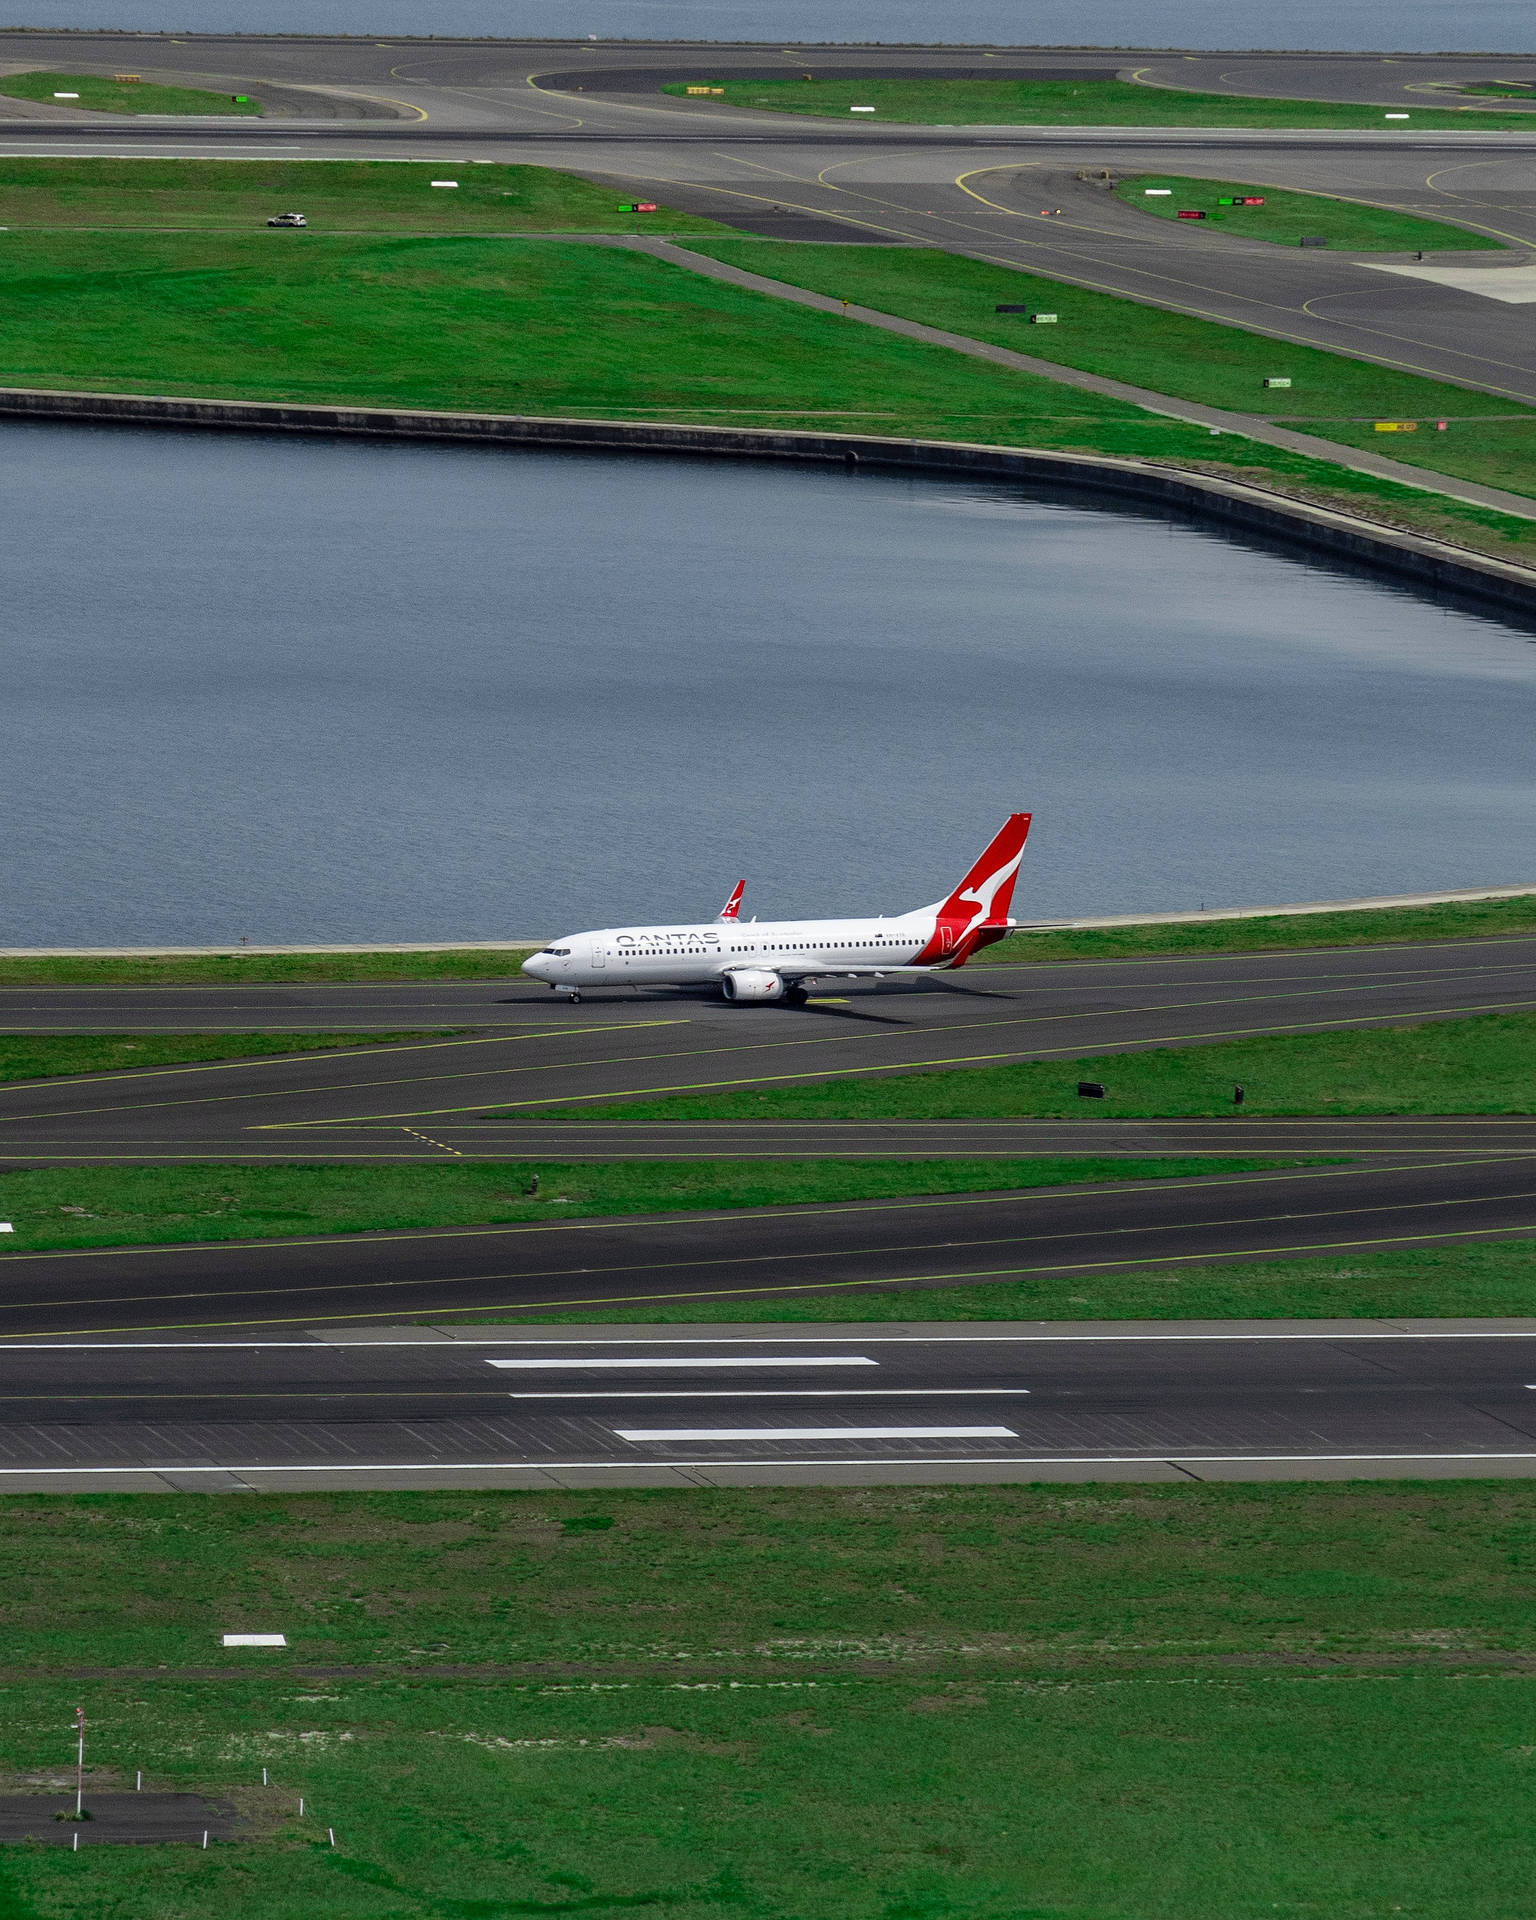 Qantas Aircraft On Runway Wallpaper